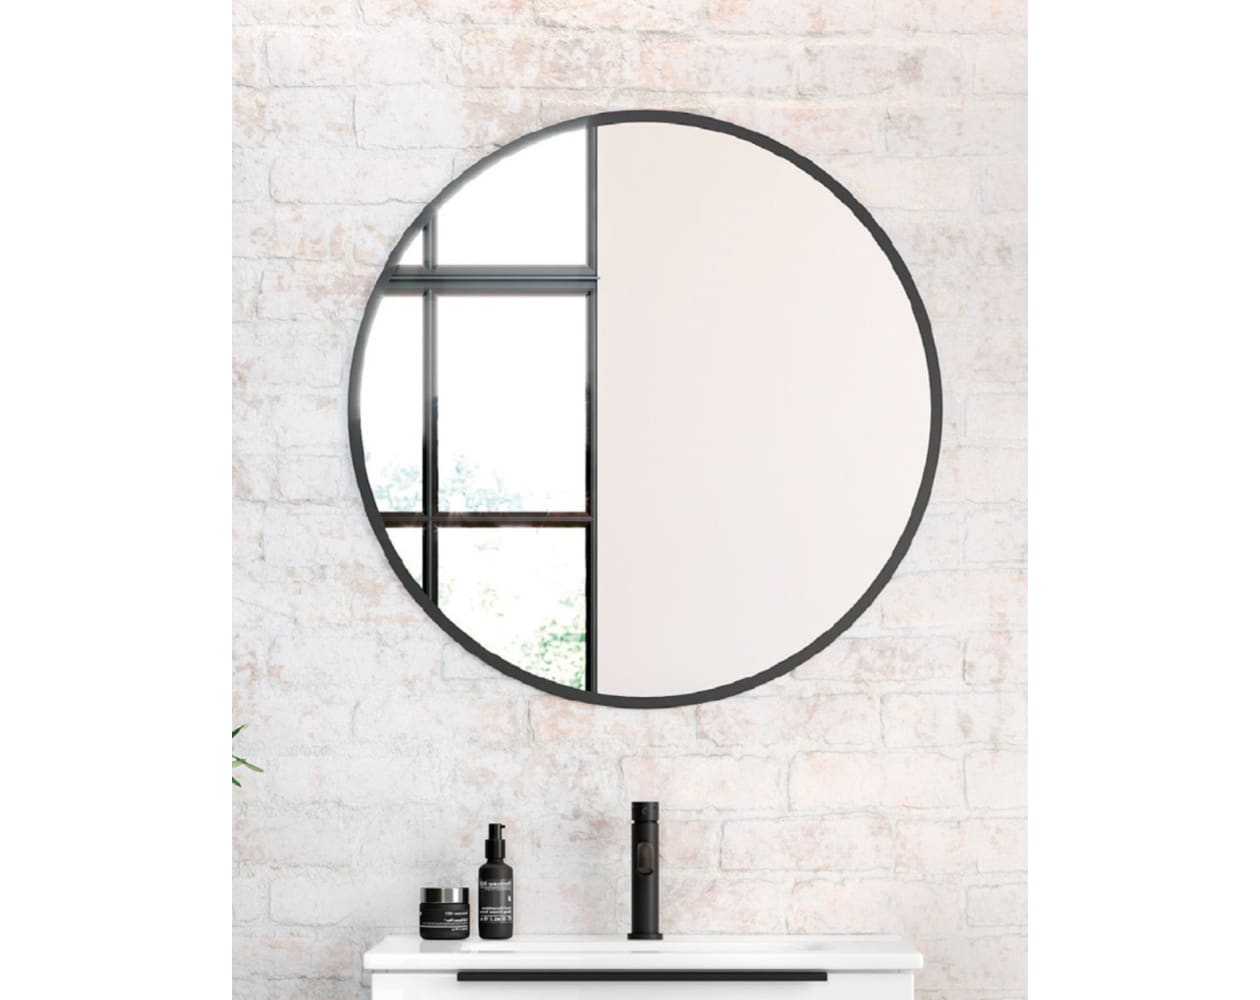 Espejo de Pared Redondo Borde Negro, Espejo de Baño Redondo, 80cm - Negro